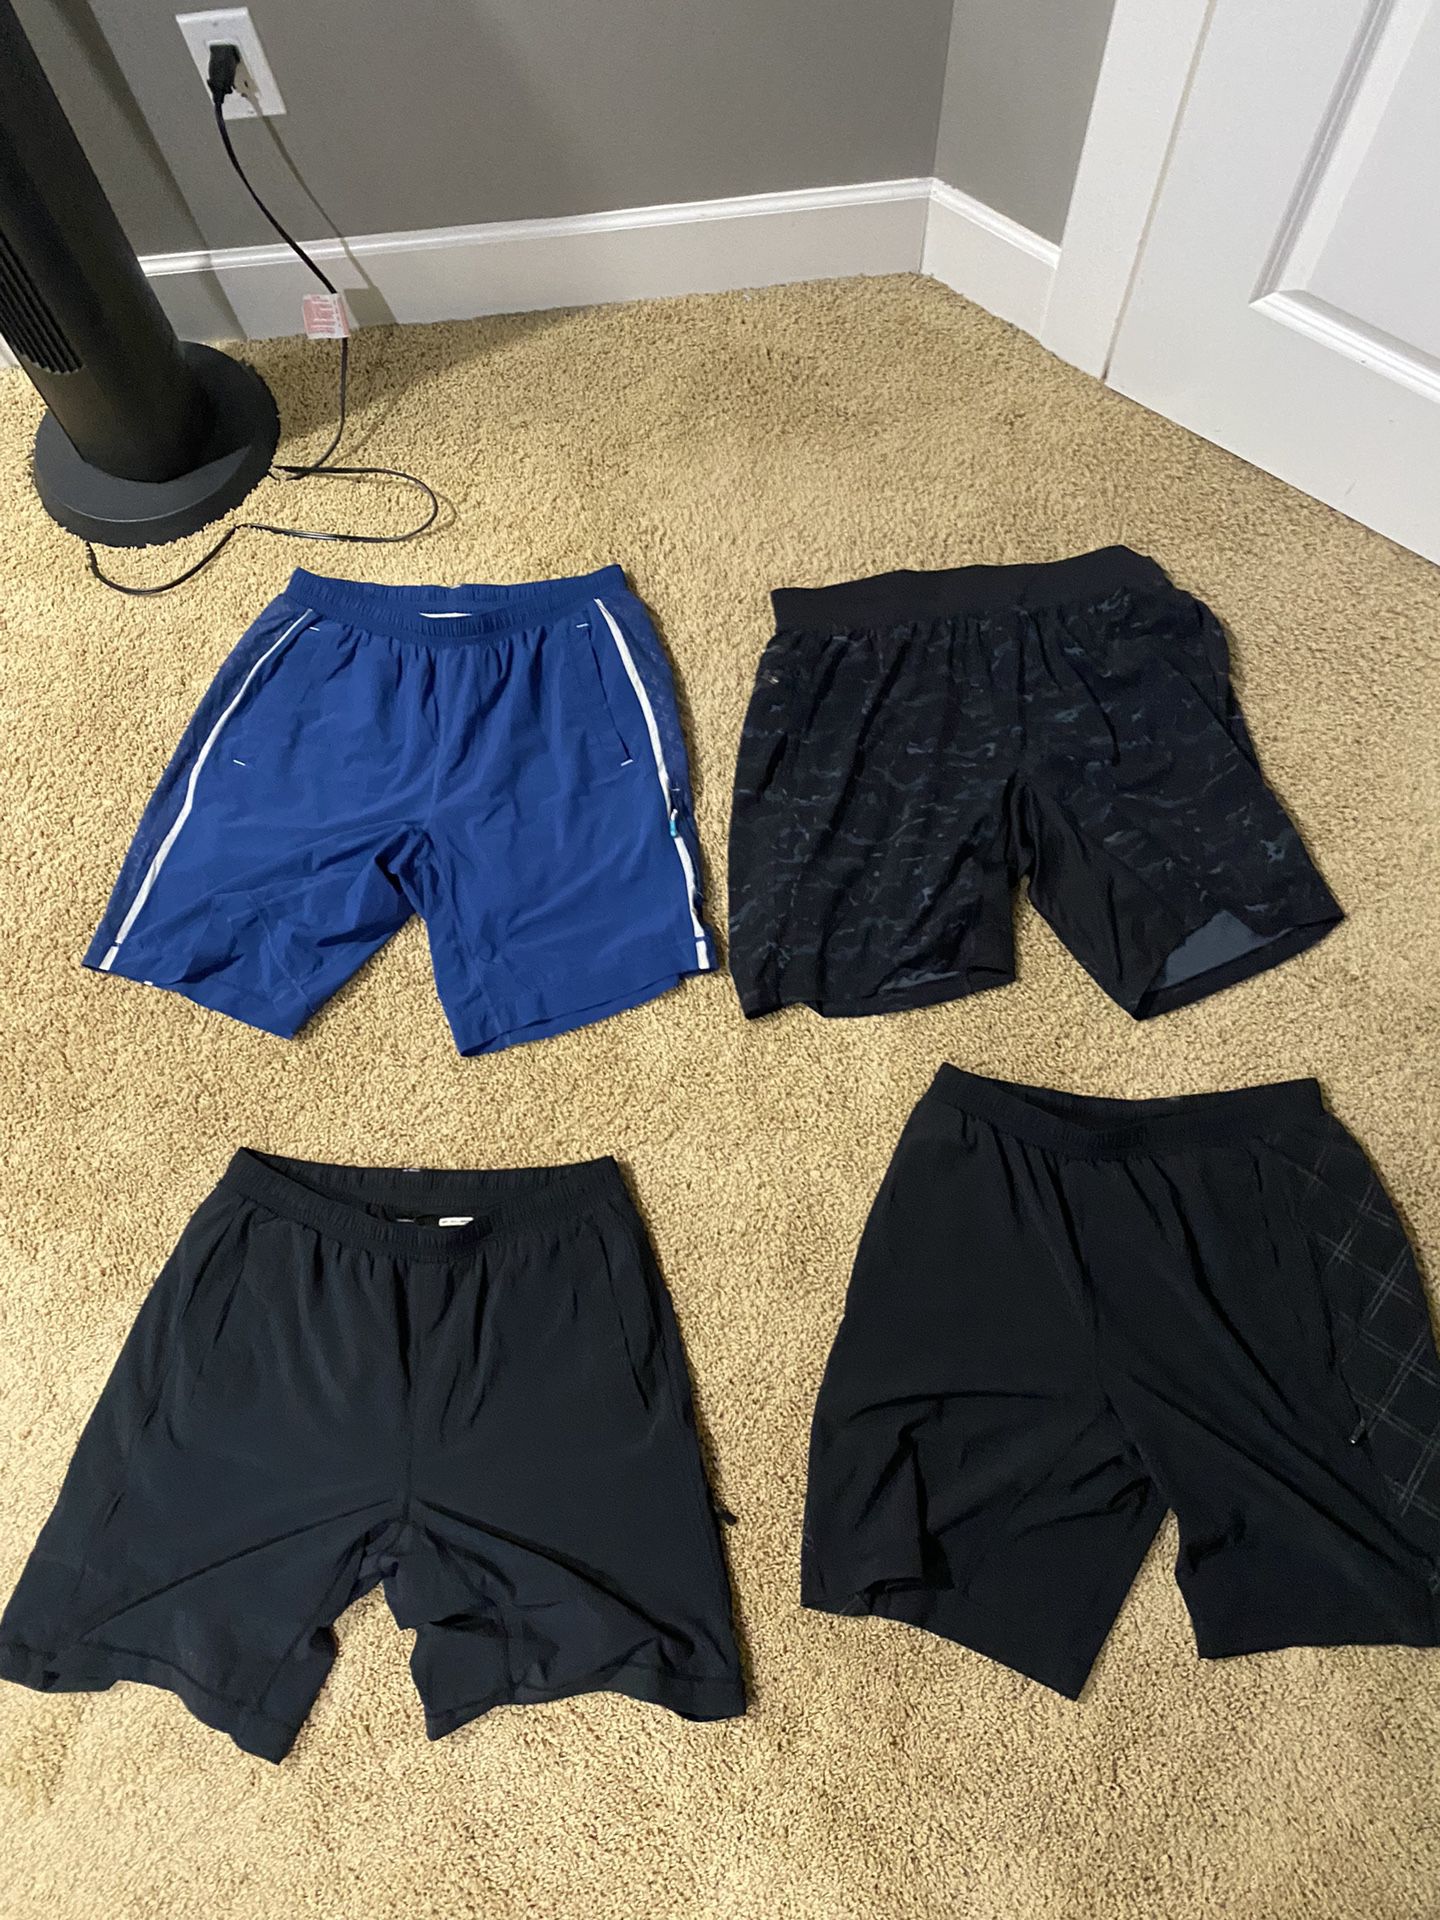 4 Lululemon Shorts 